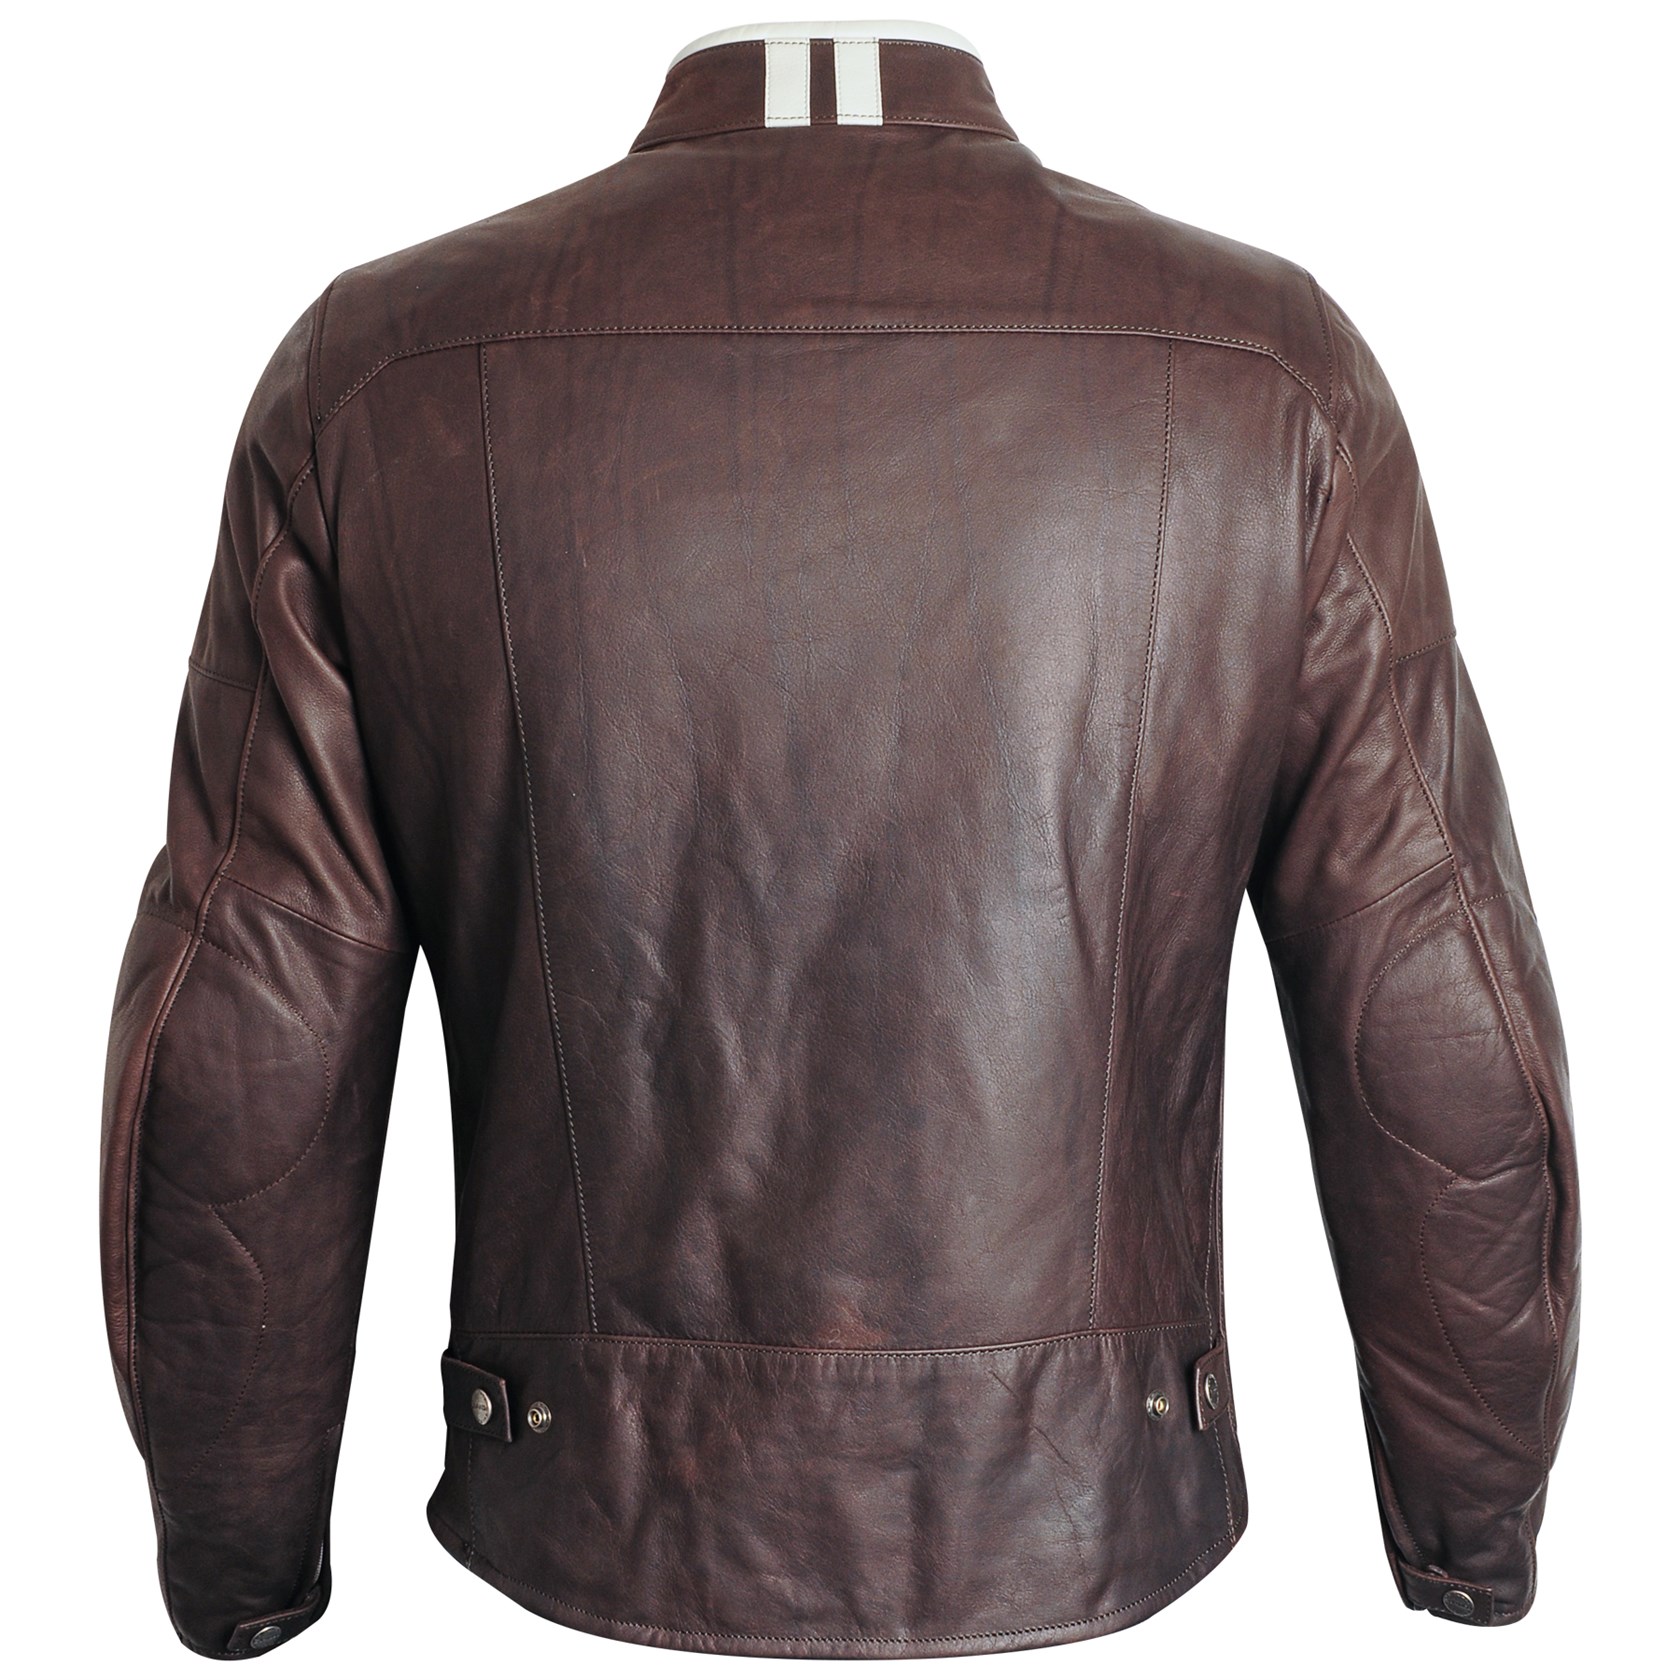 Spidi Vintage jacket in brown